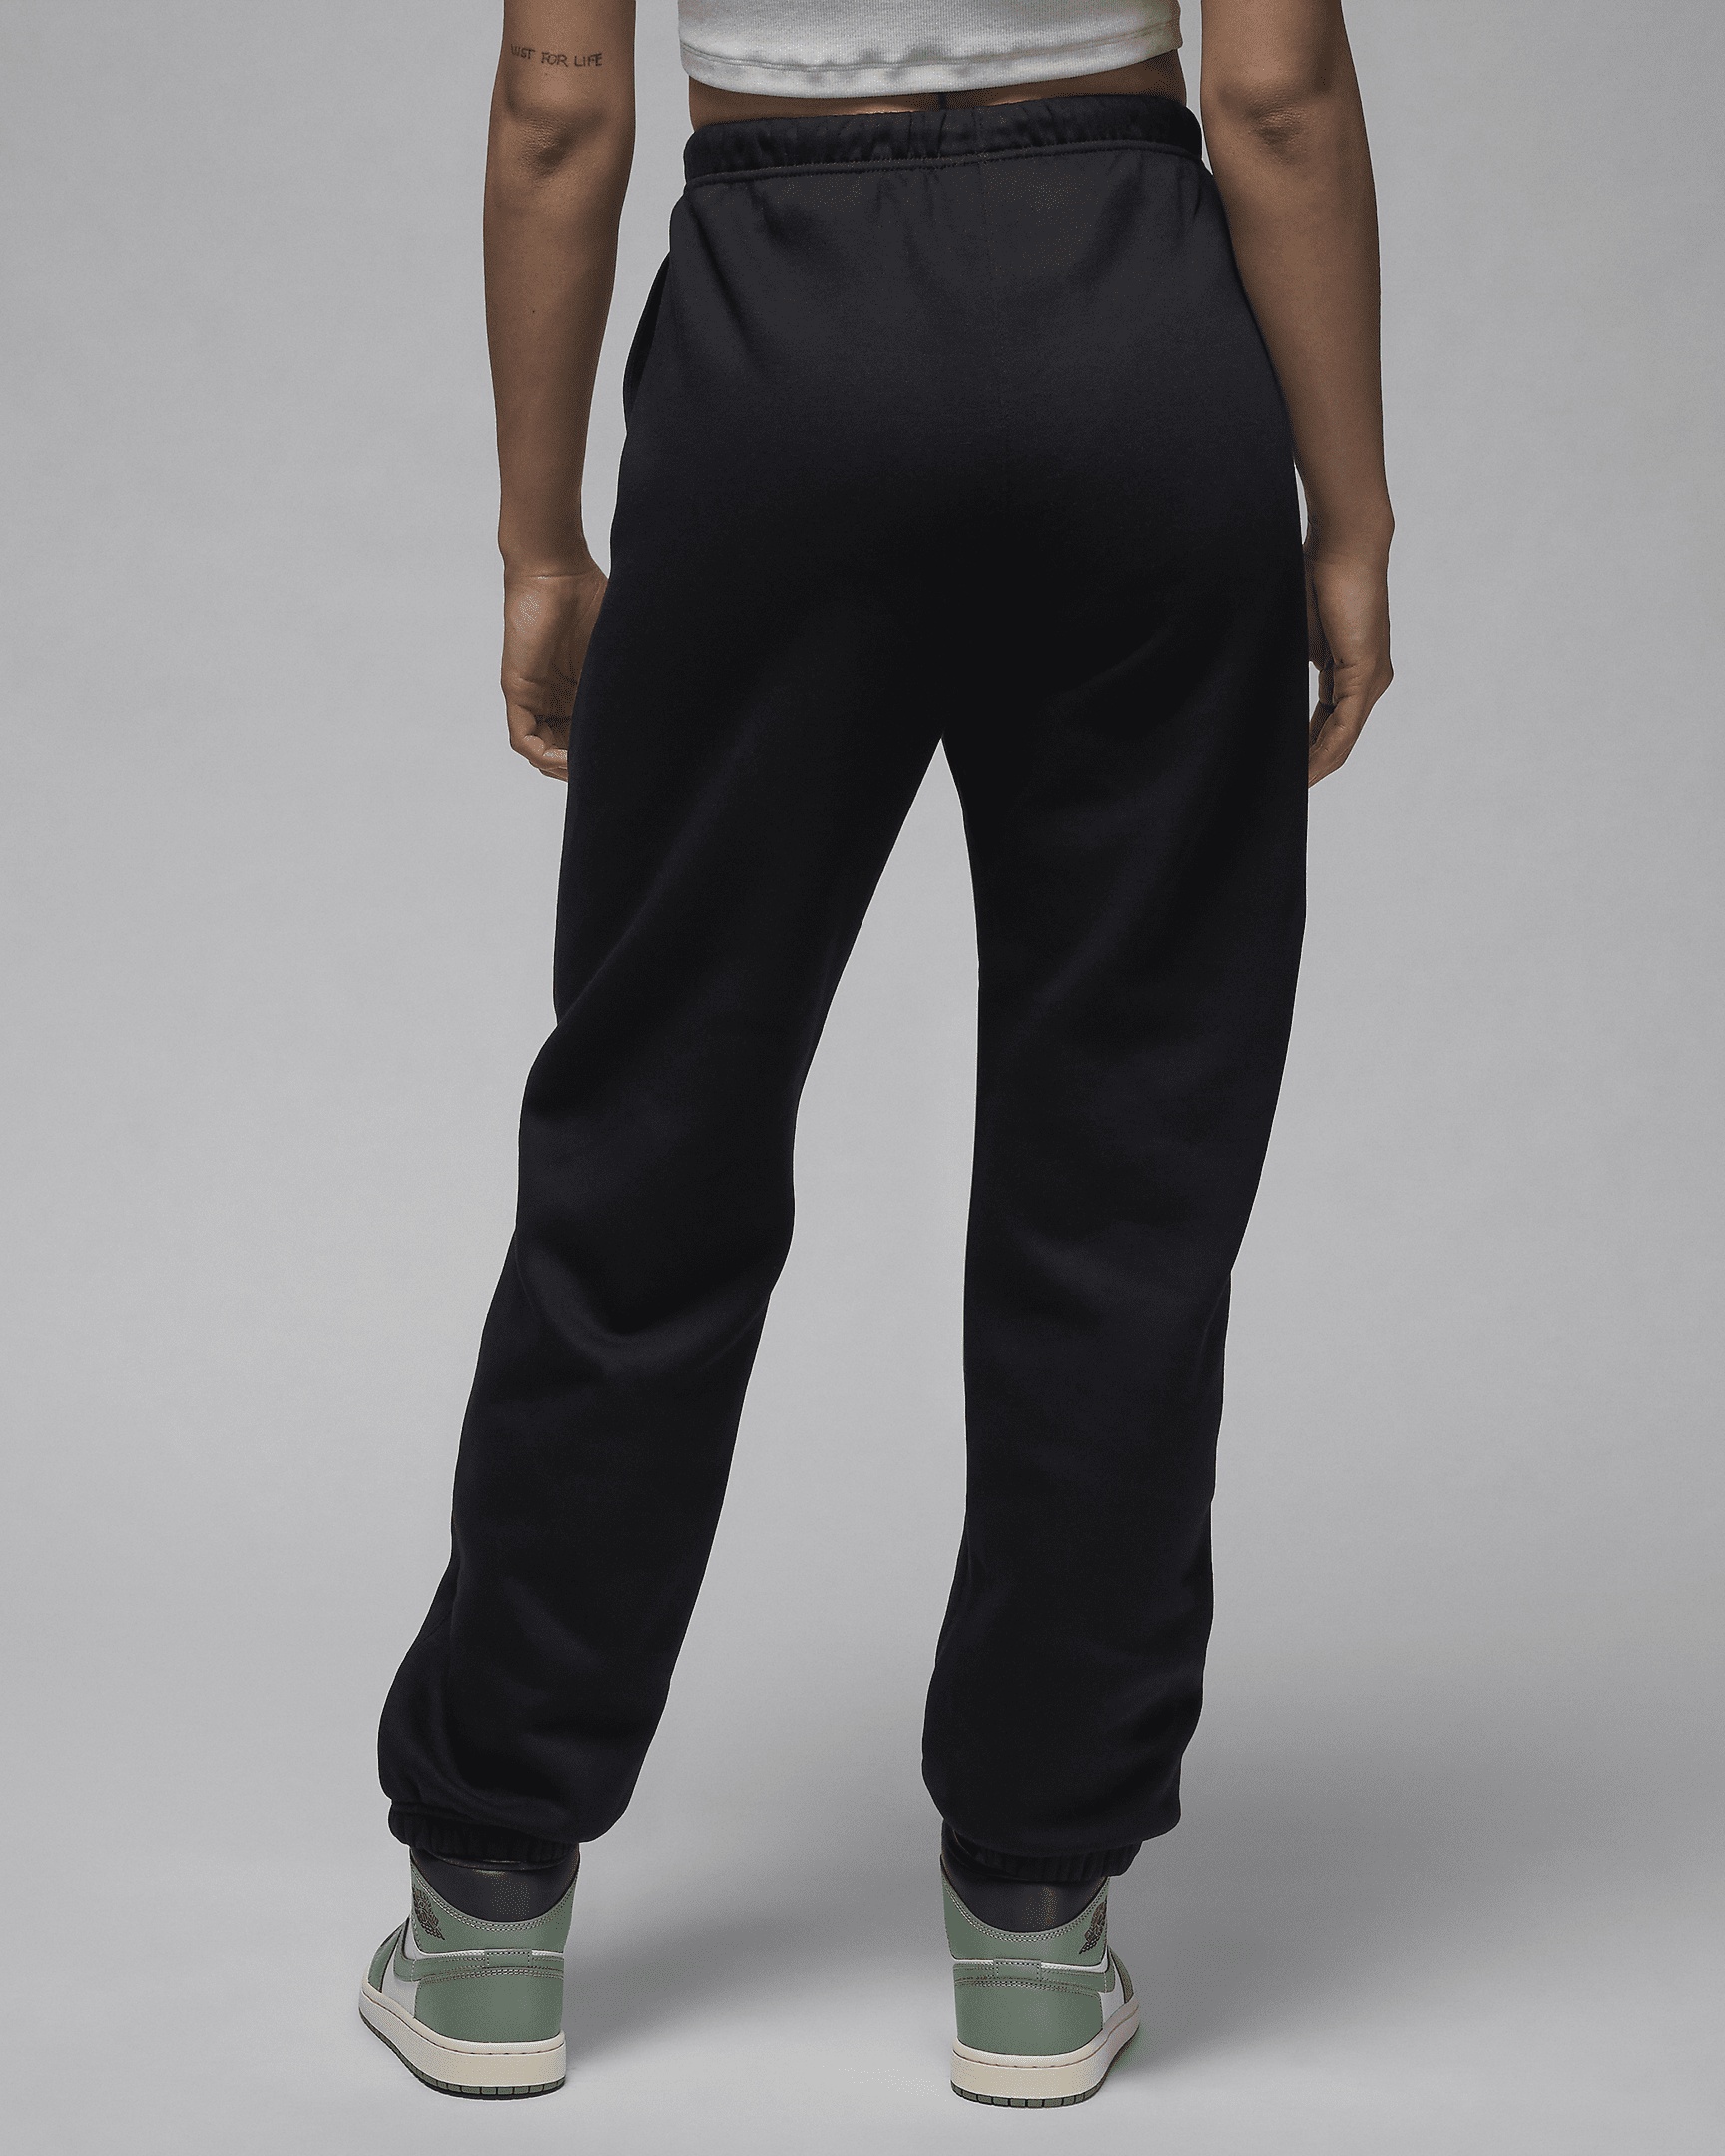 Jordan Brooklyn Fleece Women's Pants - 2